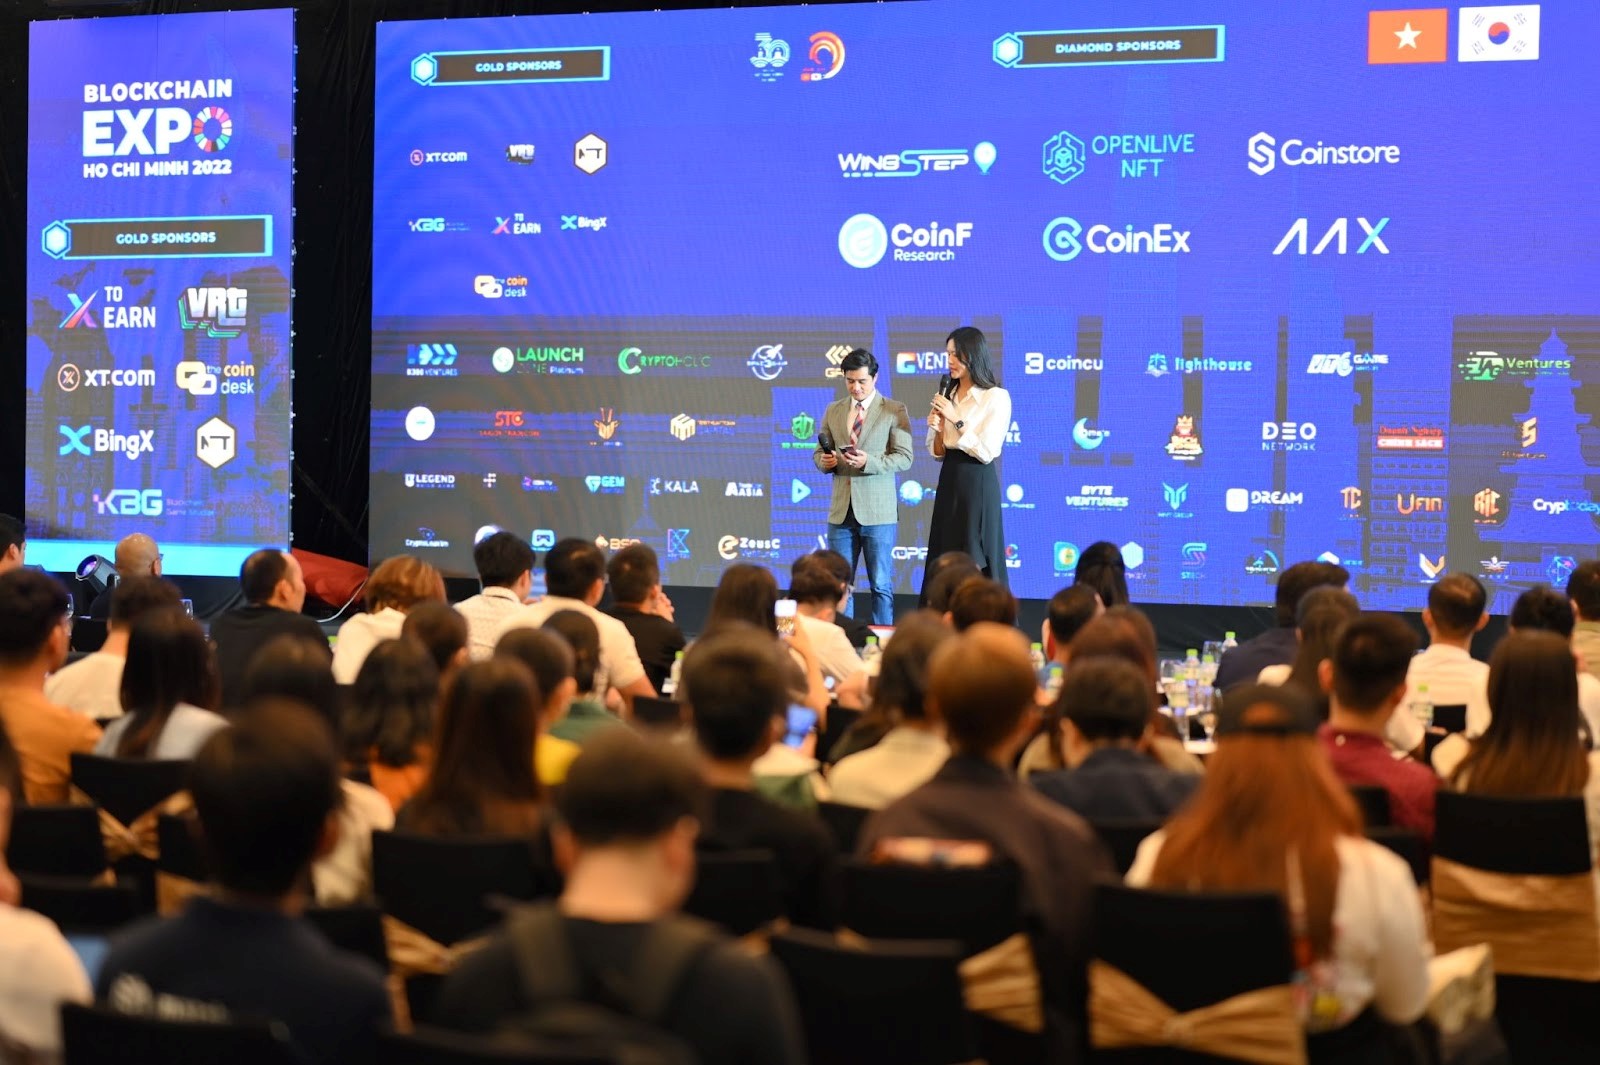 BLOCKCHAIN EXPO HOCHIMINH 2022: Đưa Blockchain Việt Nam cùng hội nhập